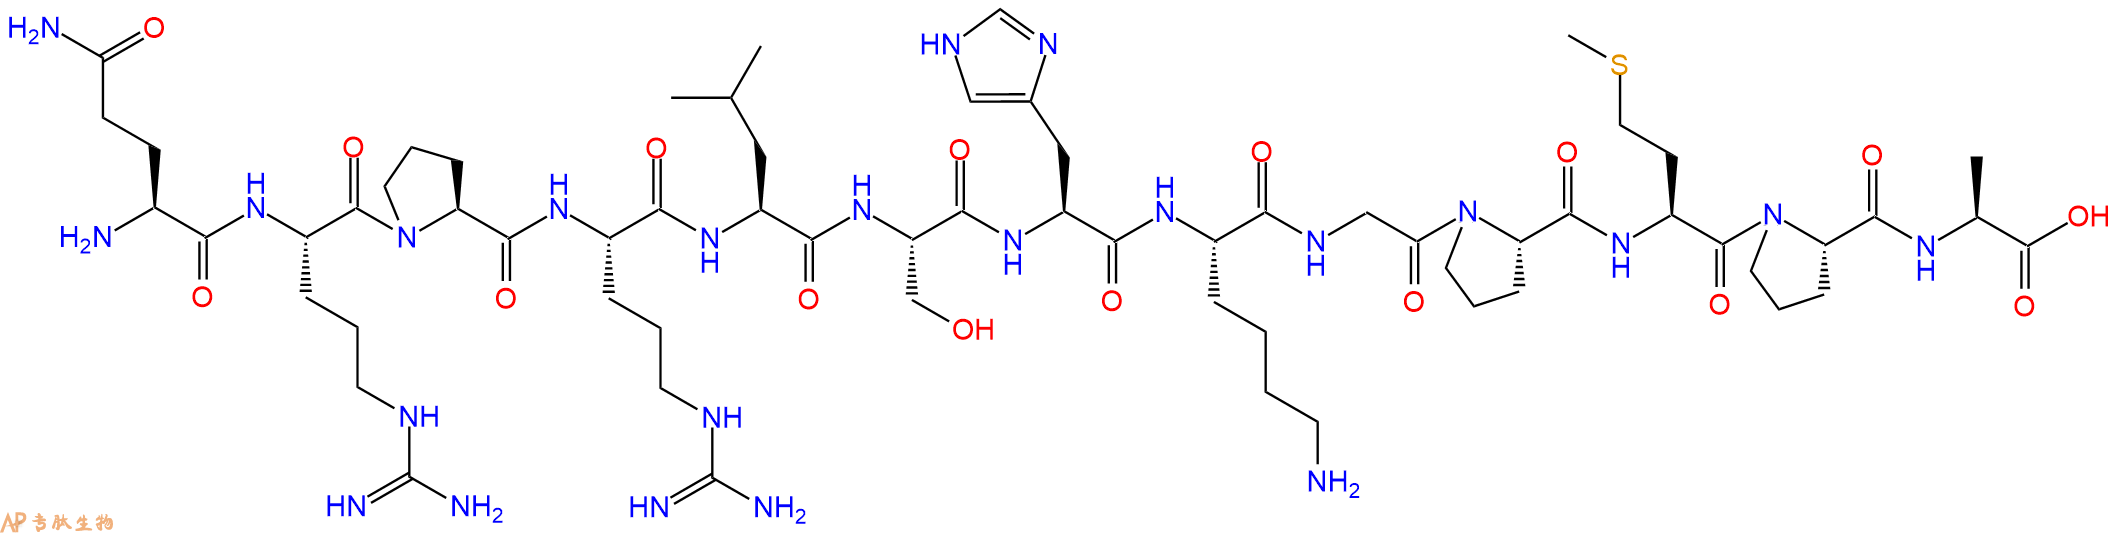 专肽生物产品爱帕琳肽、阿佩林肽：(Ala¹³)-Apelin-13 (human, bovine, mouse, rat)568565-11-7